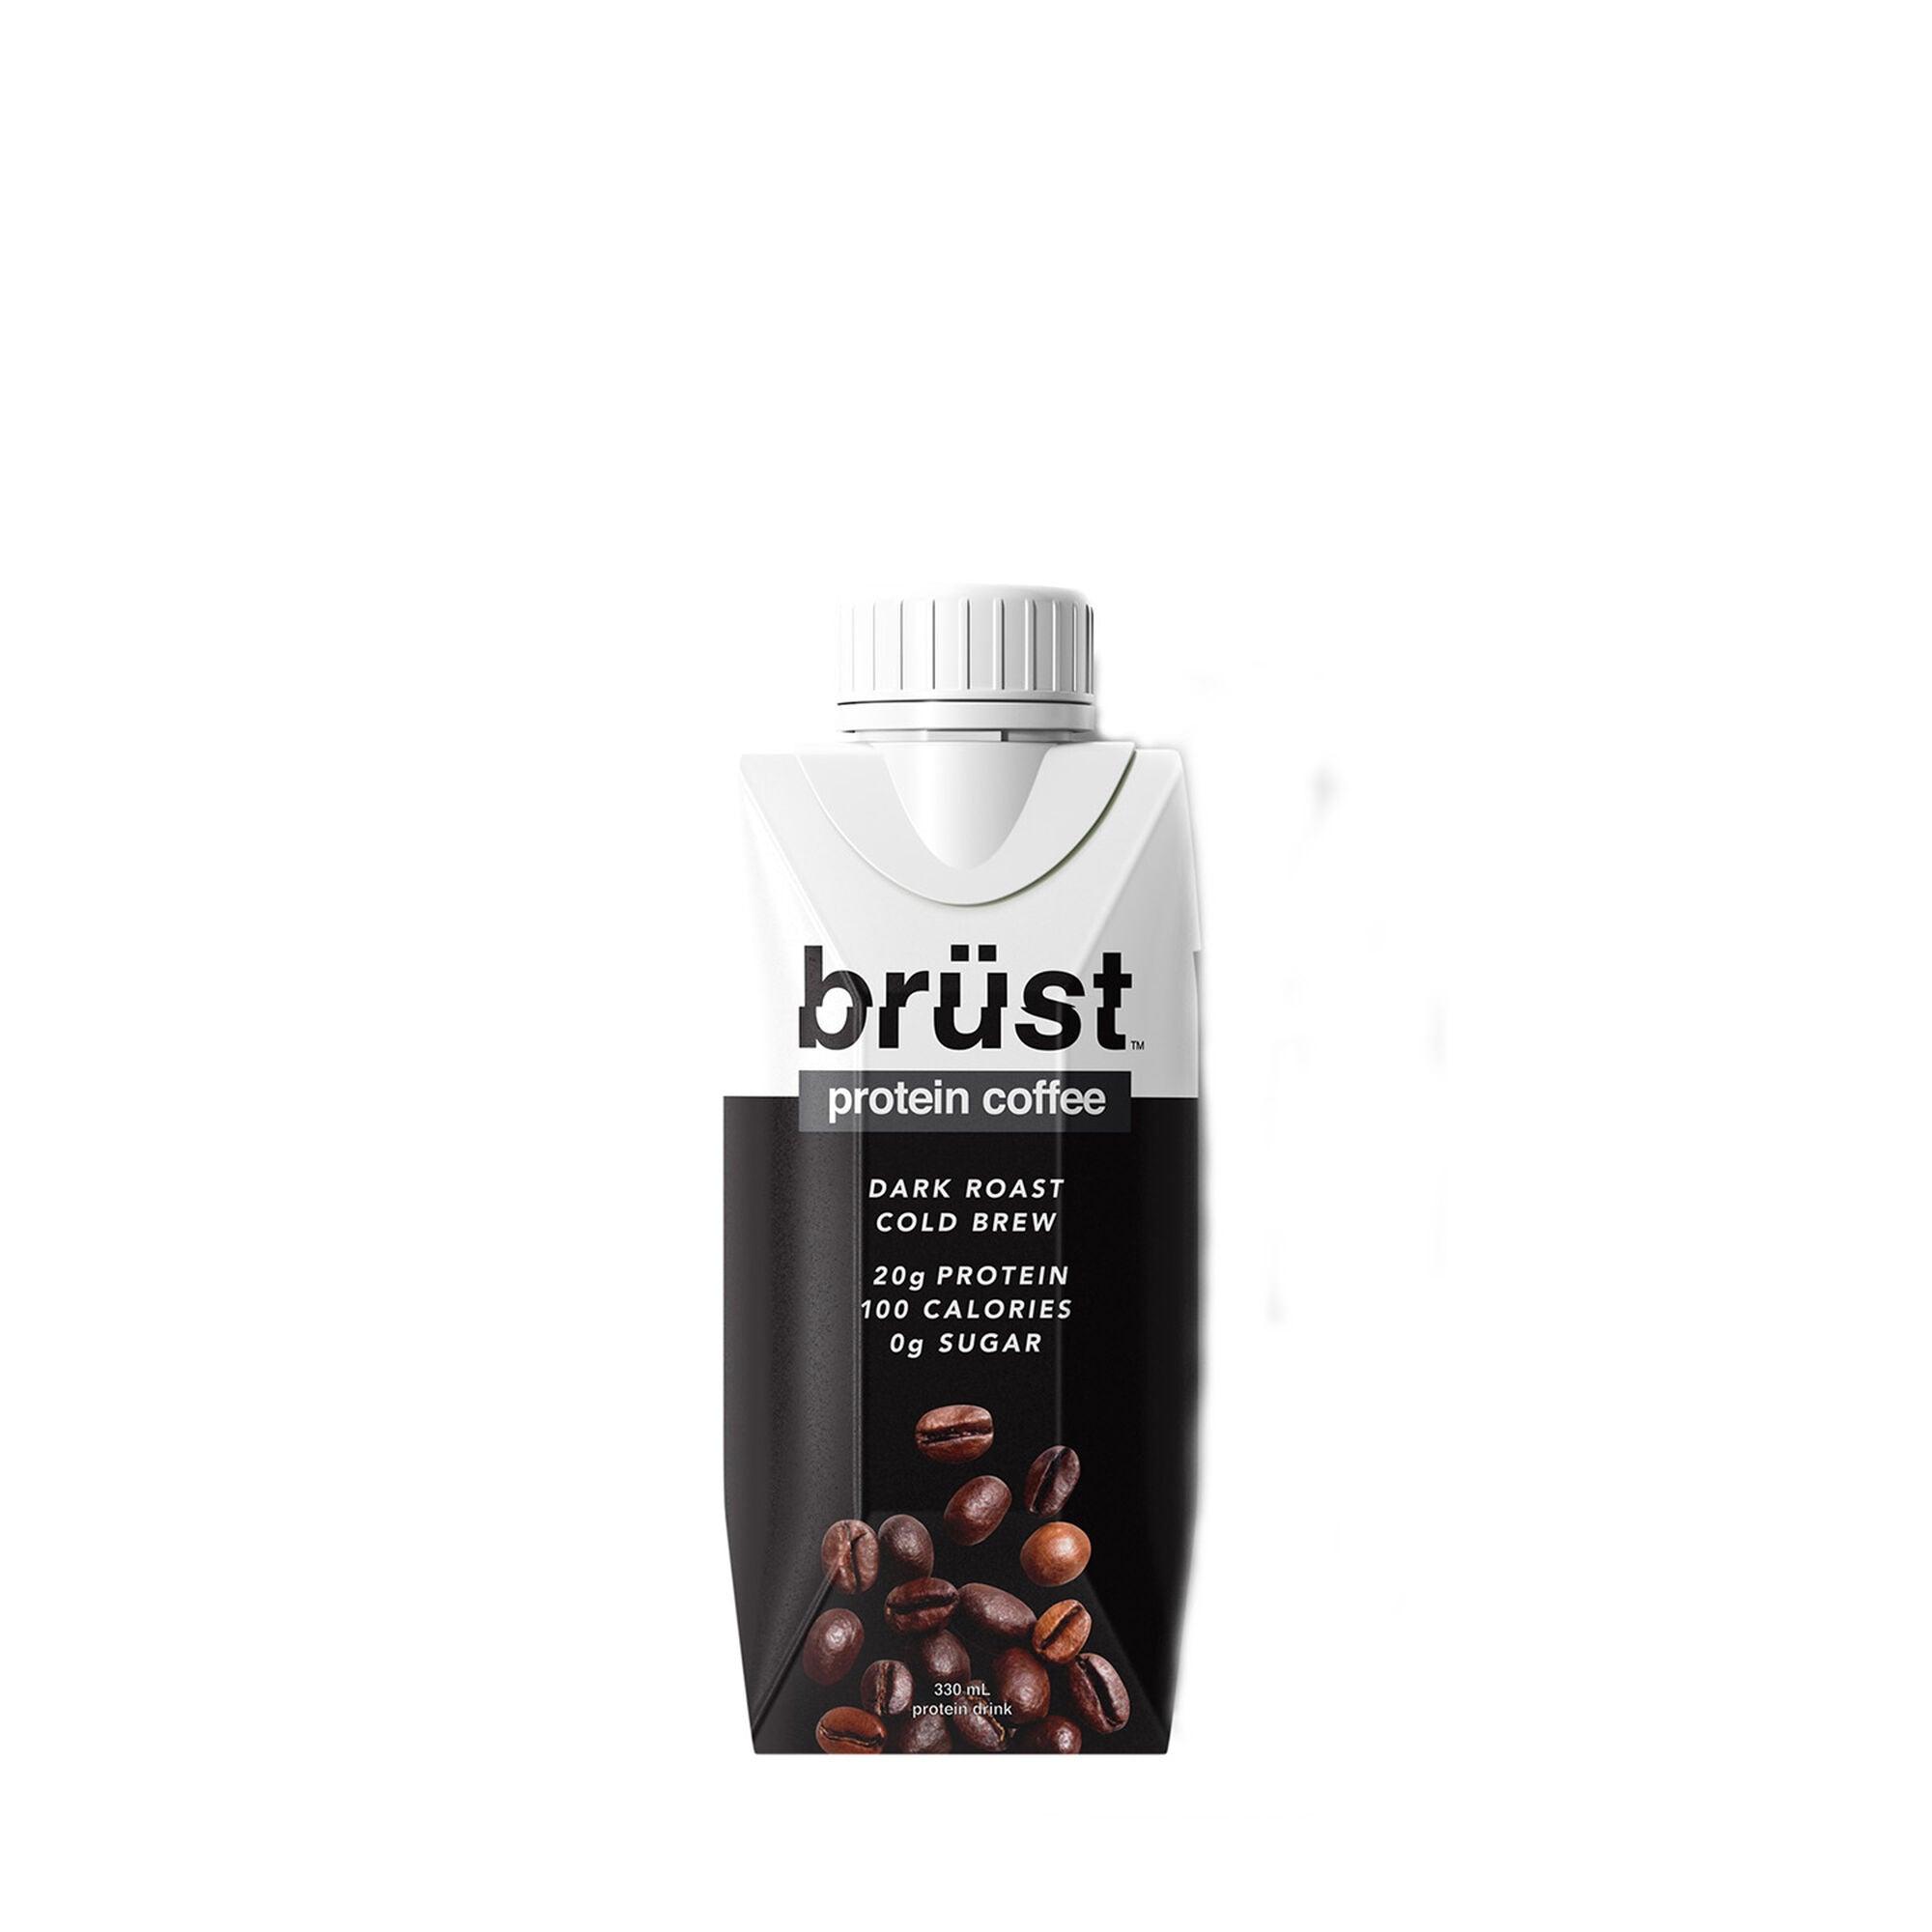 Brüst Protein Coffee (Cold Brew Dark Roast)